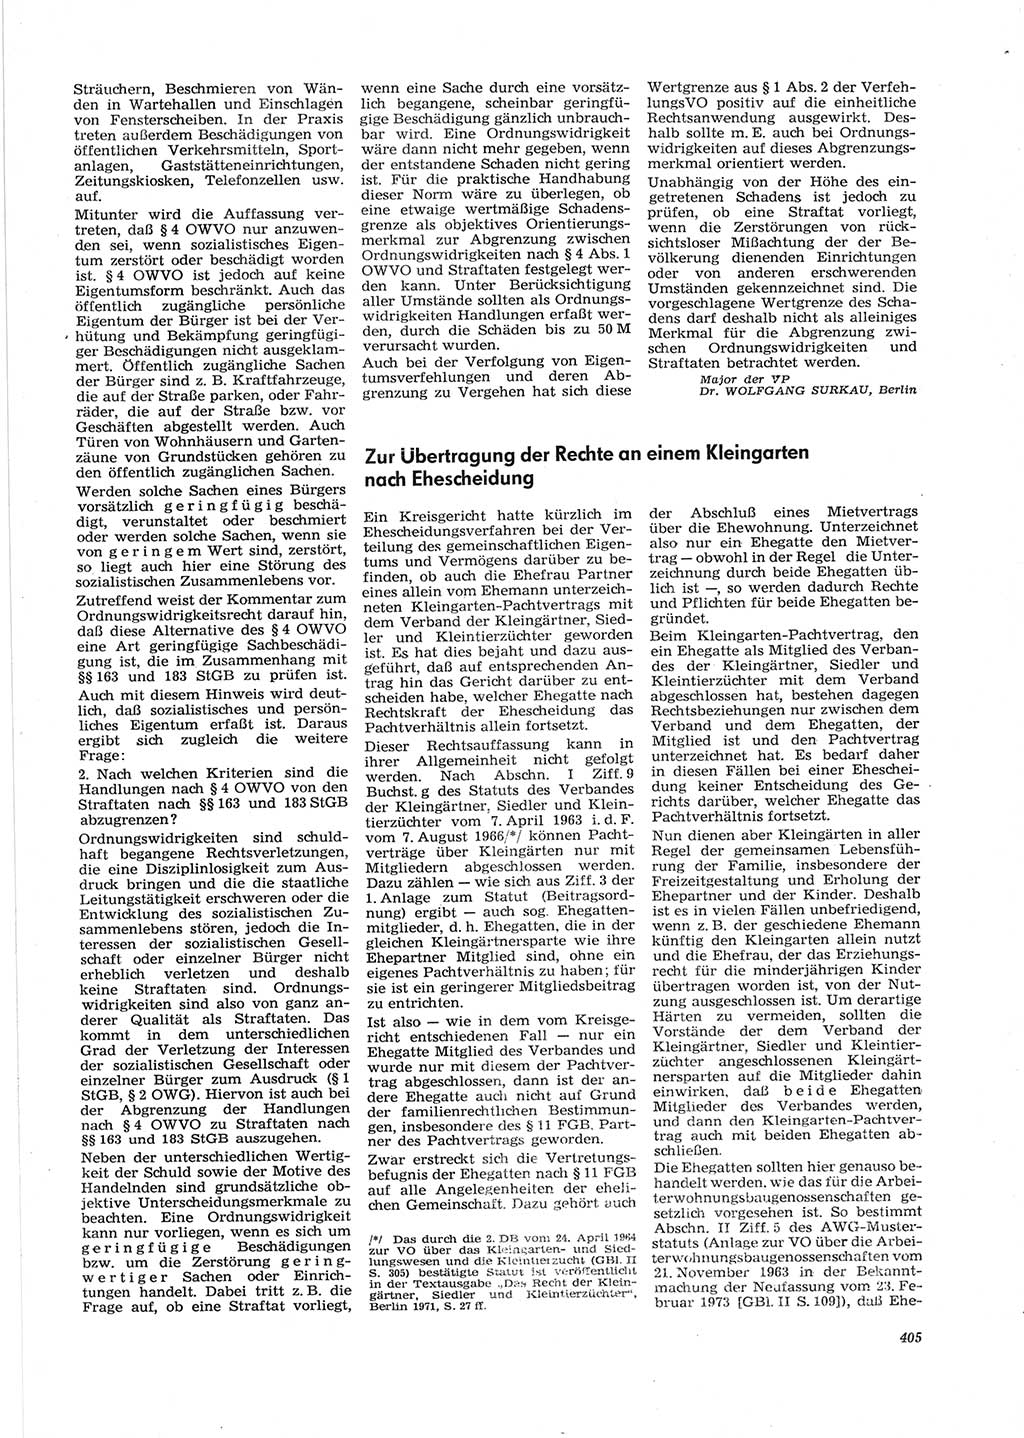 Neue Justiz (NJ), Zeitschrift für Recht und Rechtswissenschaft [Deutsche Demokratische Republik (DDR)], 28. Jahrgang 1974, Seite 405 (NJ DDR 1974, S. 405)